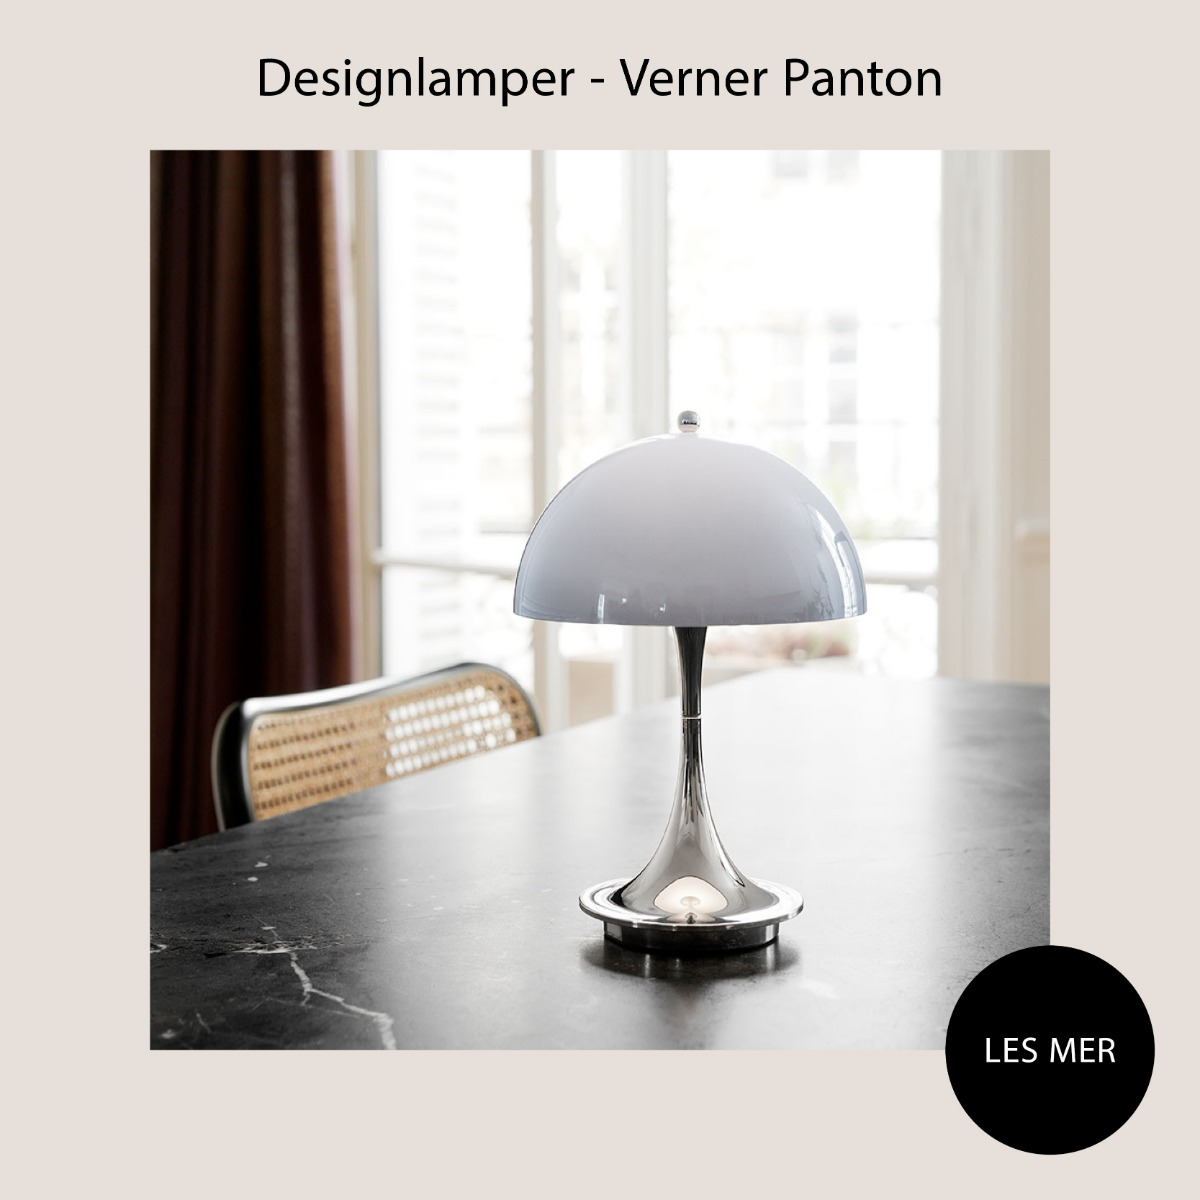 Utforsk designlamper fra Verner Panton